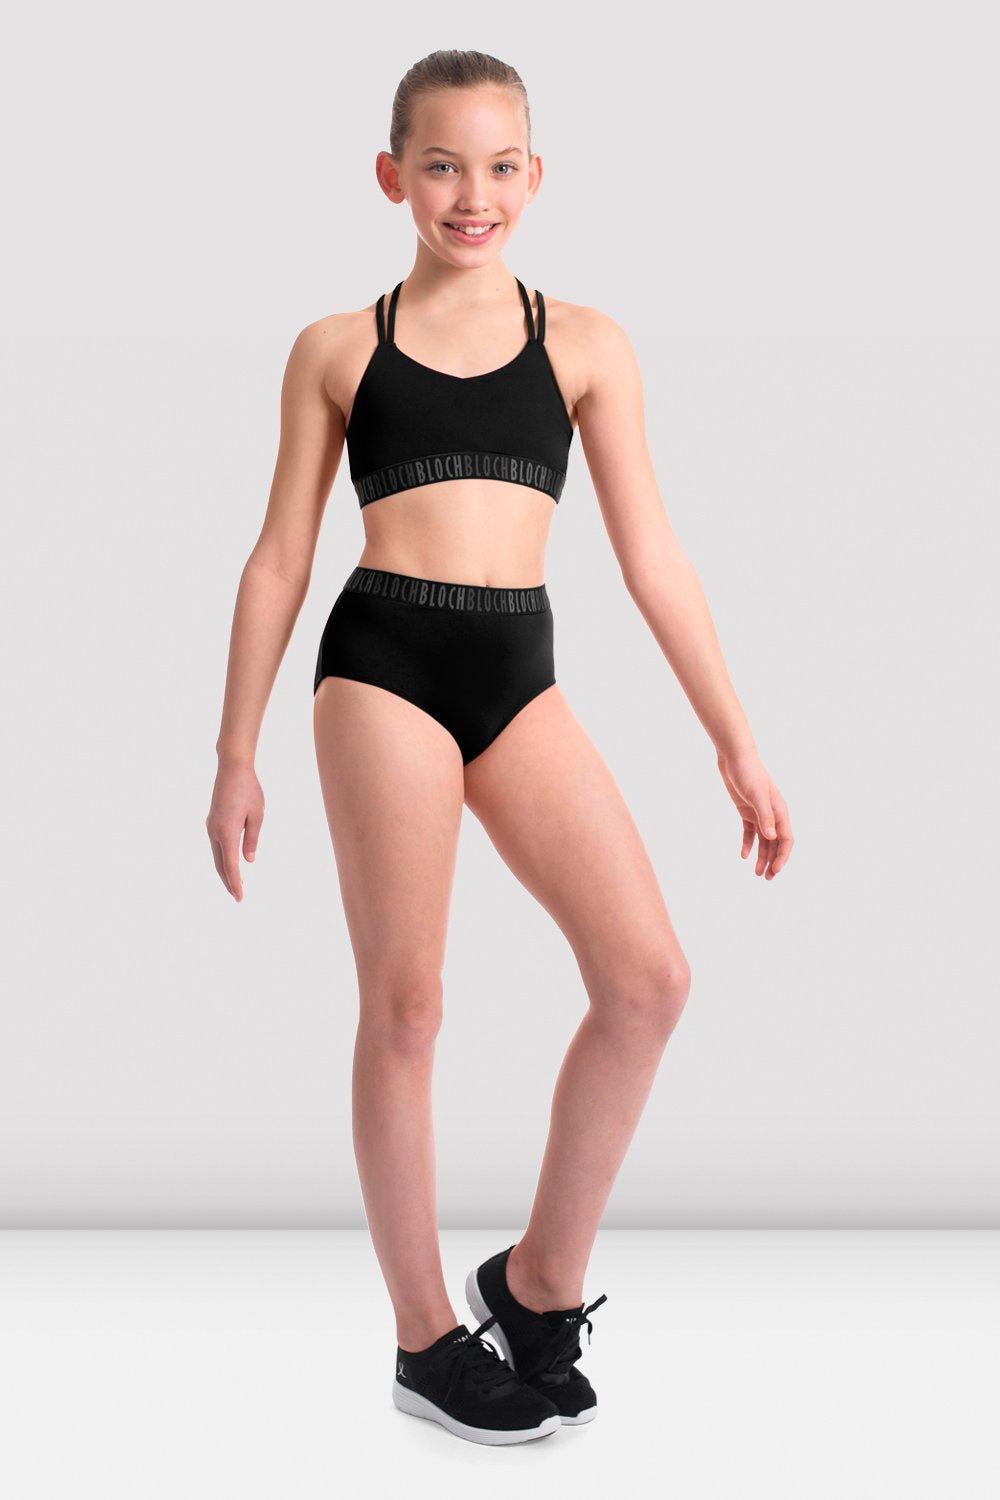 Girls Ballet Gymnastics Dancewear High Cut Briefs Underwear Shorts  Undergarments